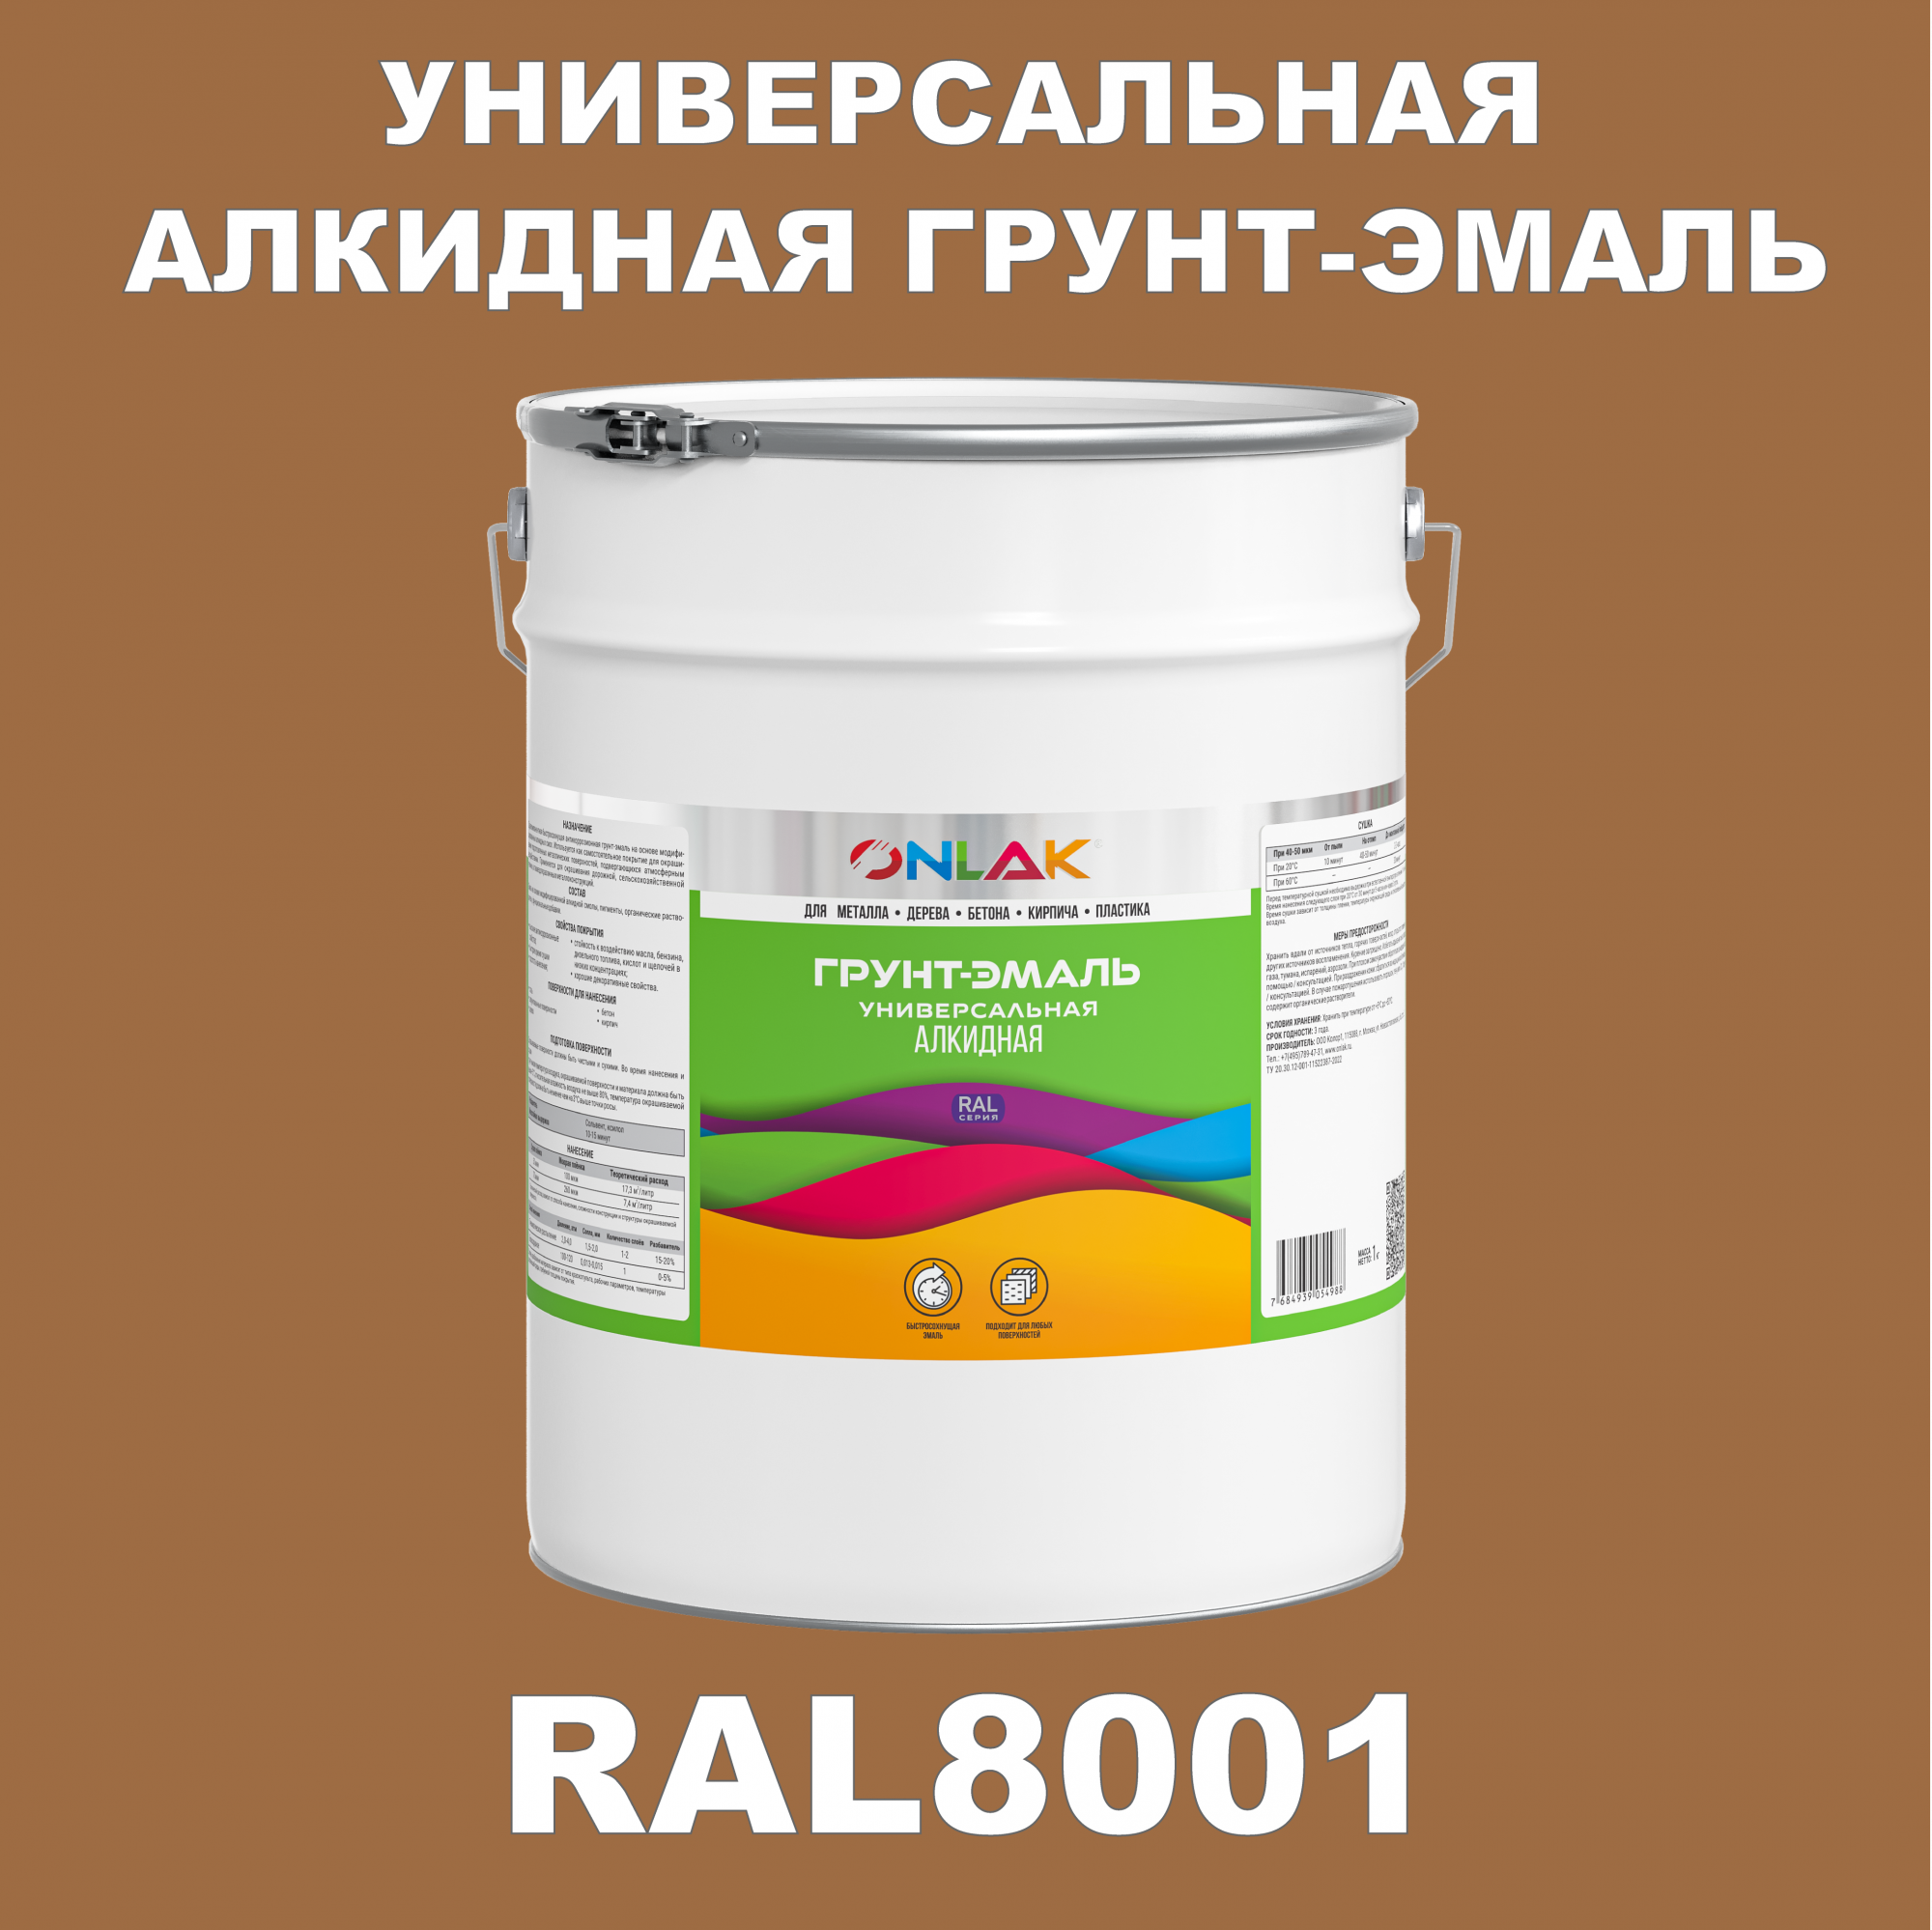 Грунт-эмаль ONLAK 1К RAL8001 антикоррозионная алкидная по металлу по ржавчине 20 кг грунт эмаль аэрозольная престиж 3в1 алкидная коричневая ral 8017 425 мл 0 425 кг